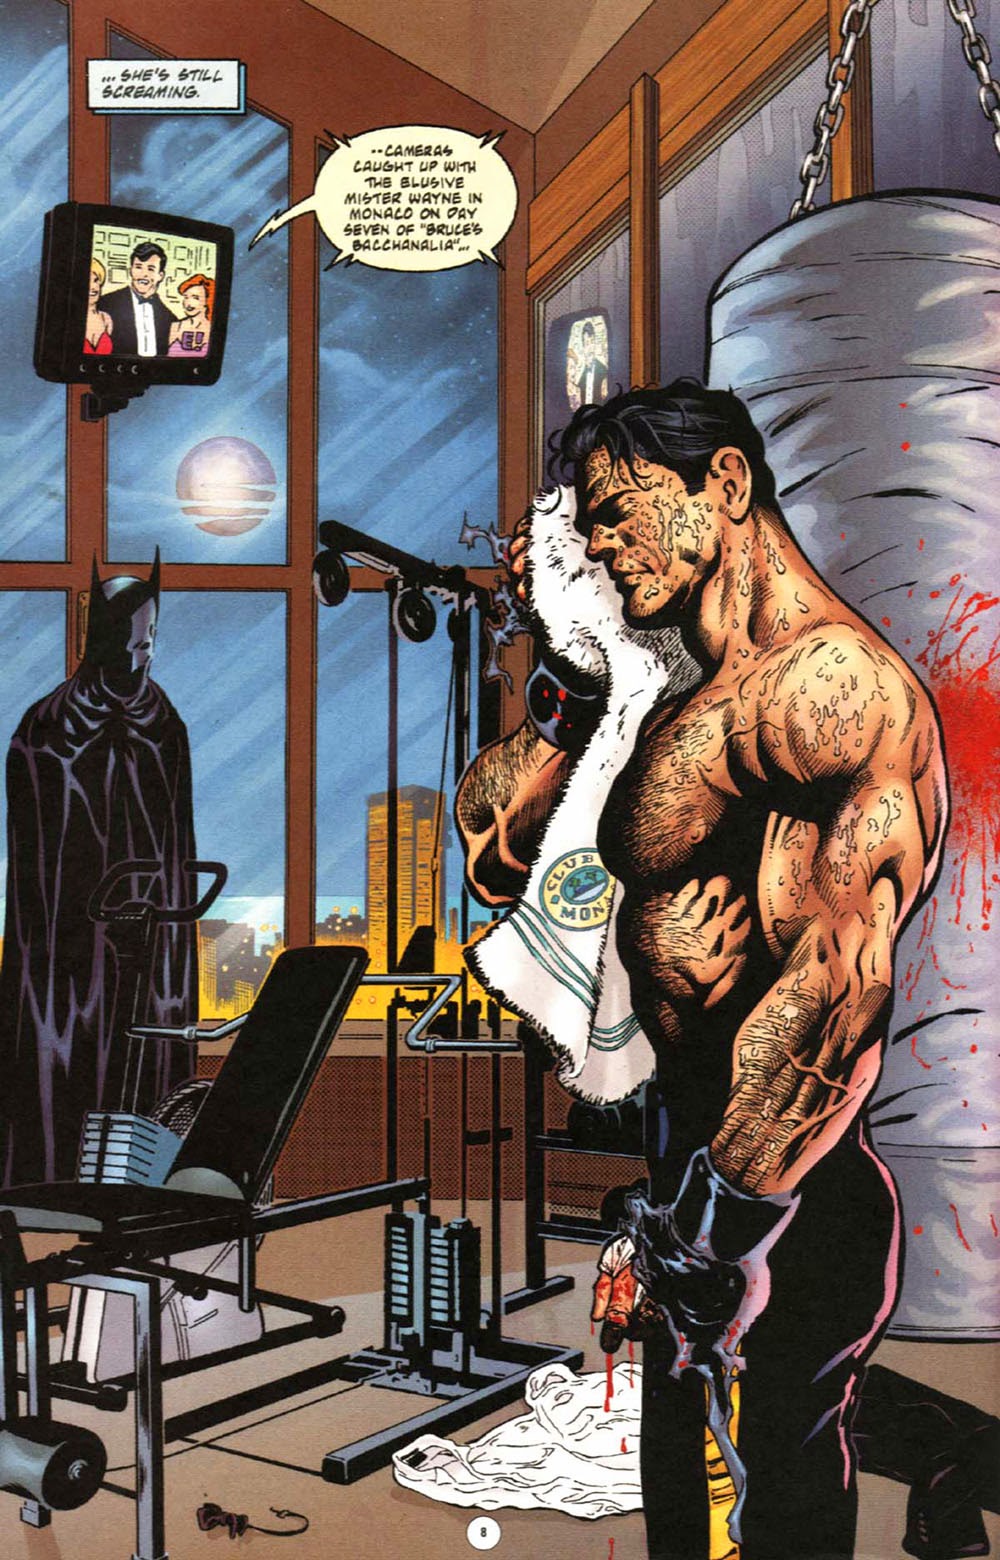 Batman No Mans Land Vol 5 | Read Batman No Mans Land Vol 5 comic online in  high quality. Read Full Comic online for free - Read comics online in high  quality .| READ COMIC ONLINE